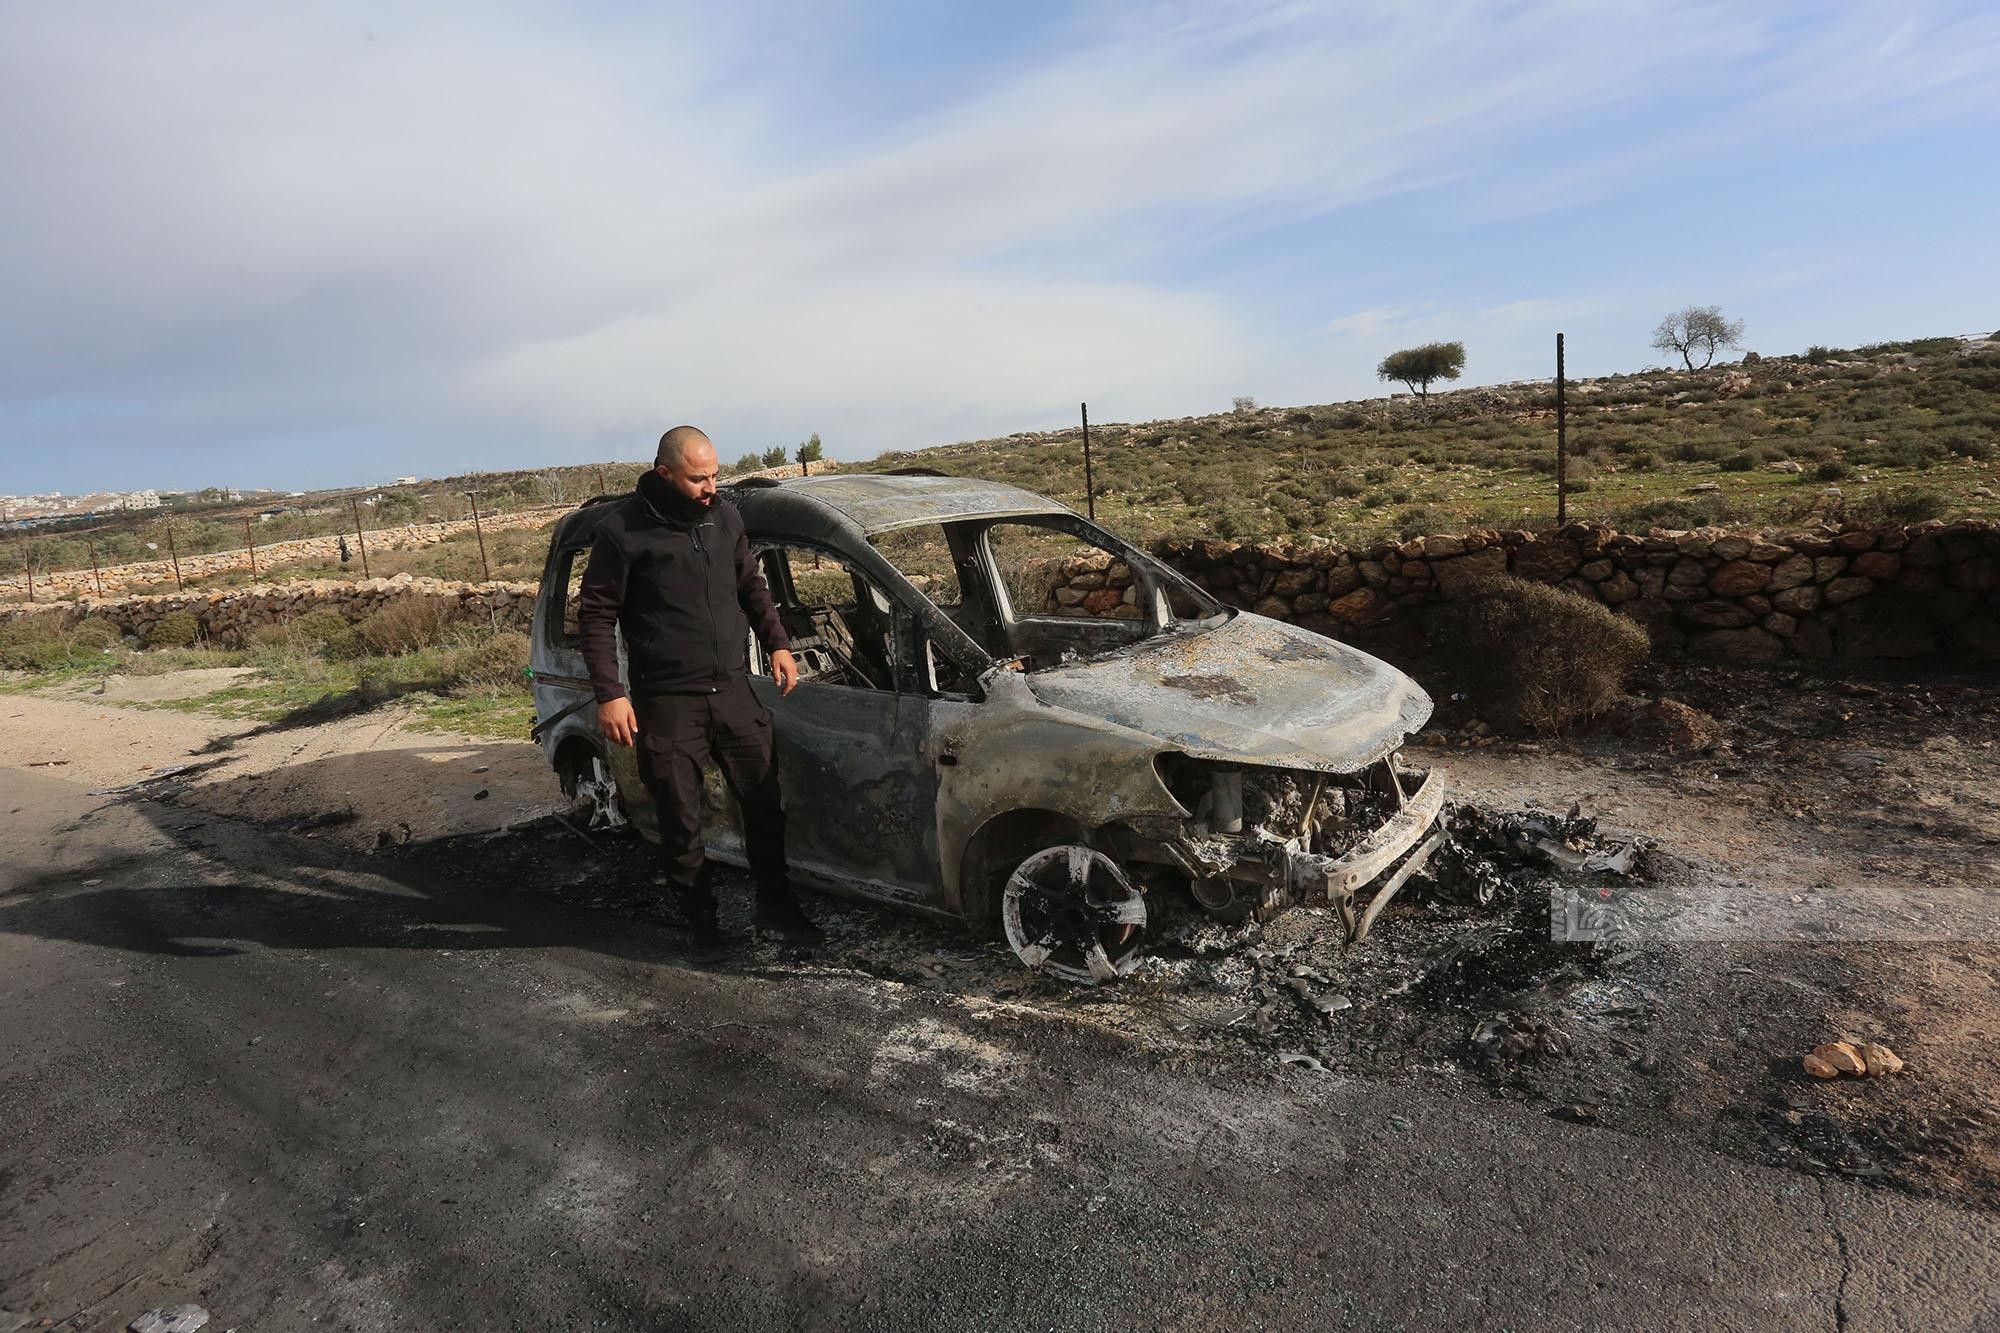 مستوطنون يحرقون ست مركبات فلسطينية بشكل كامل بين بلدتي عقربا ومجدل بني فاضل قرب نابلس 7.jpg